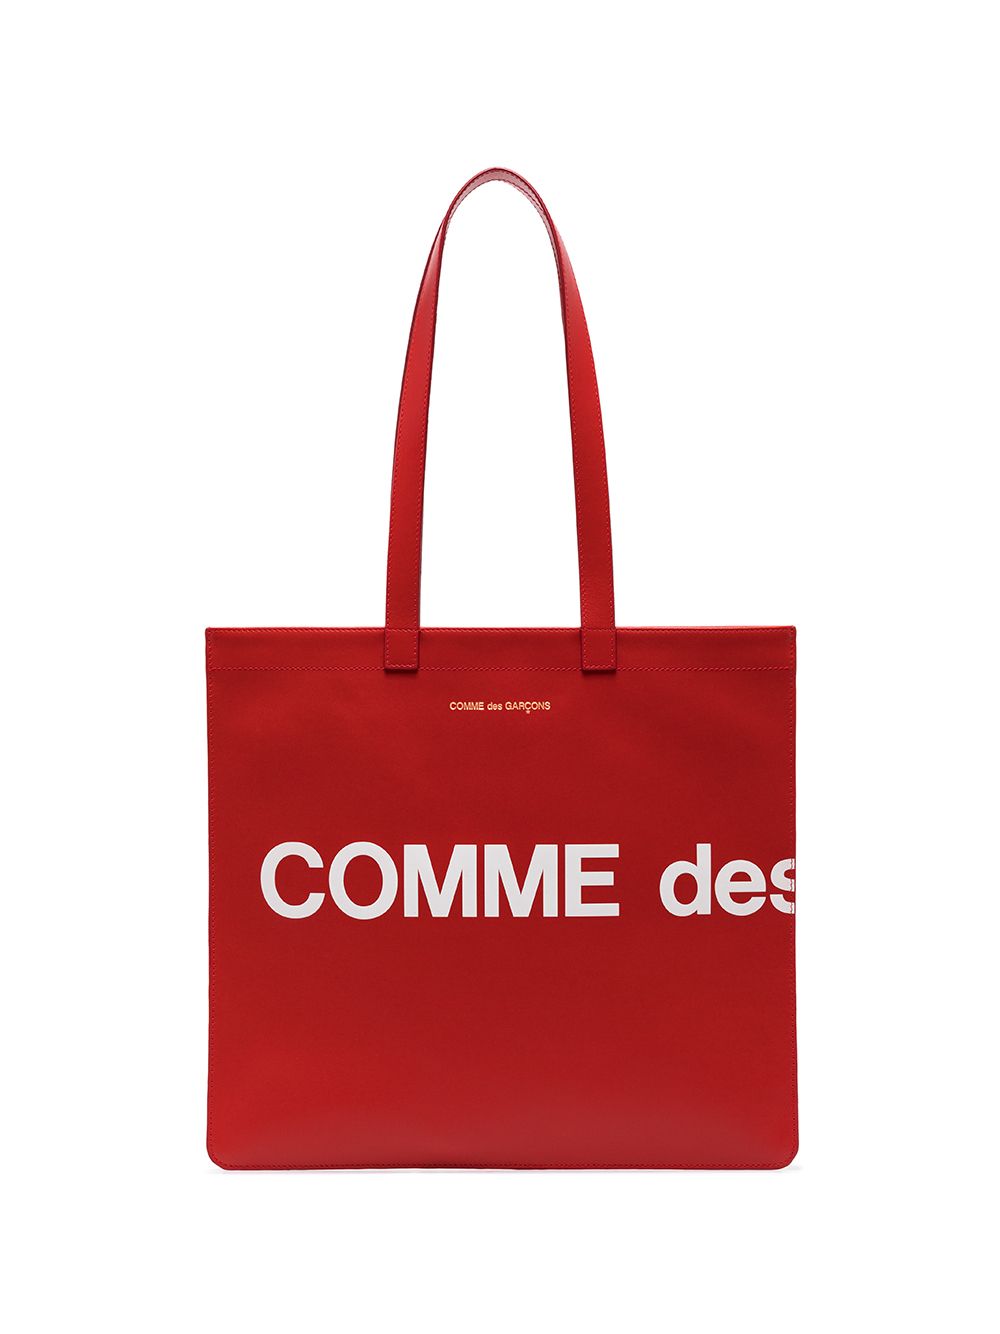 фото Comme des garçons wallet сумка-тоут с логотипом